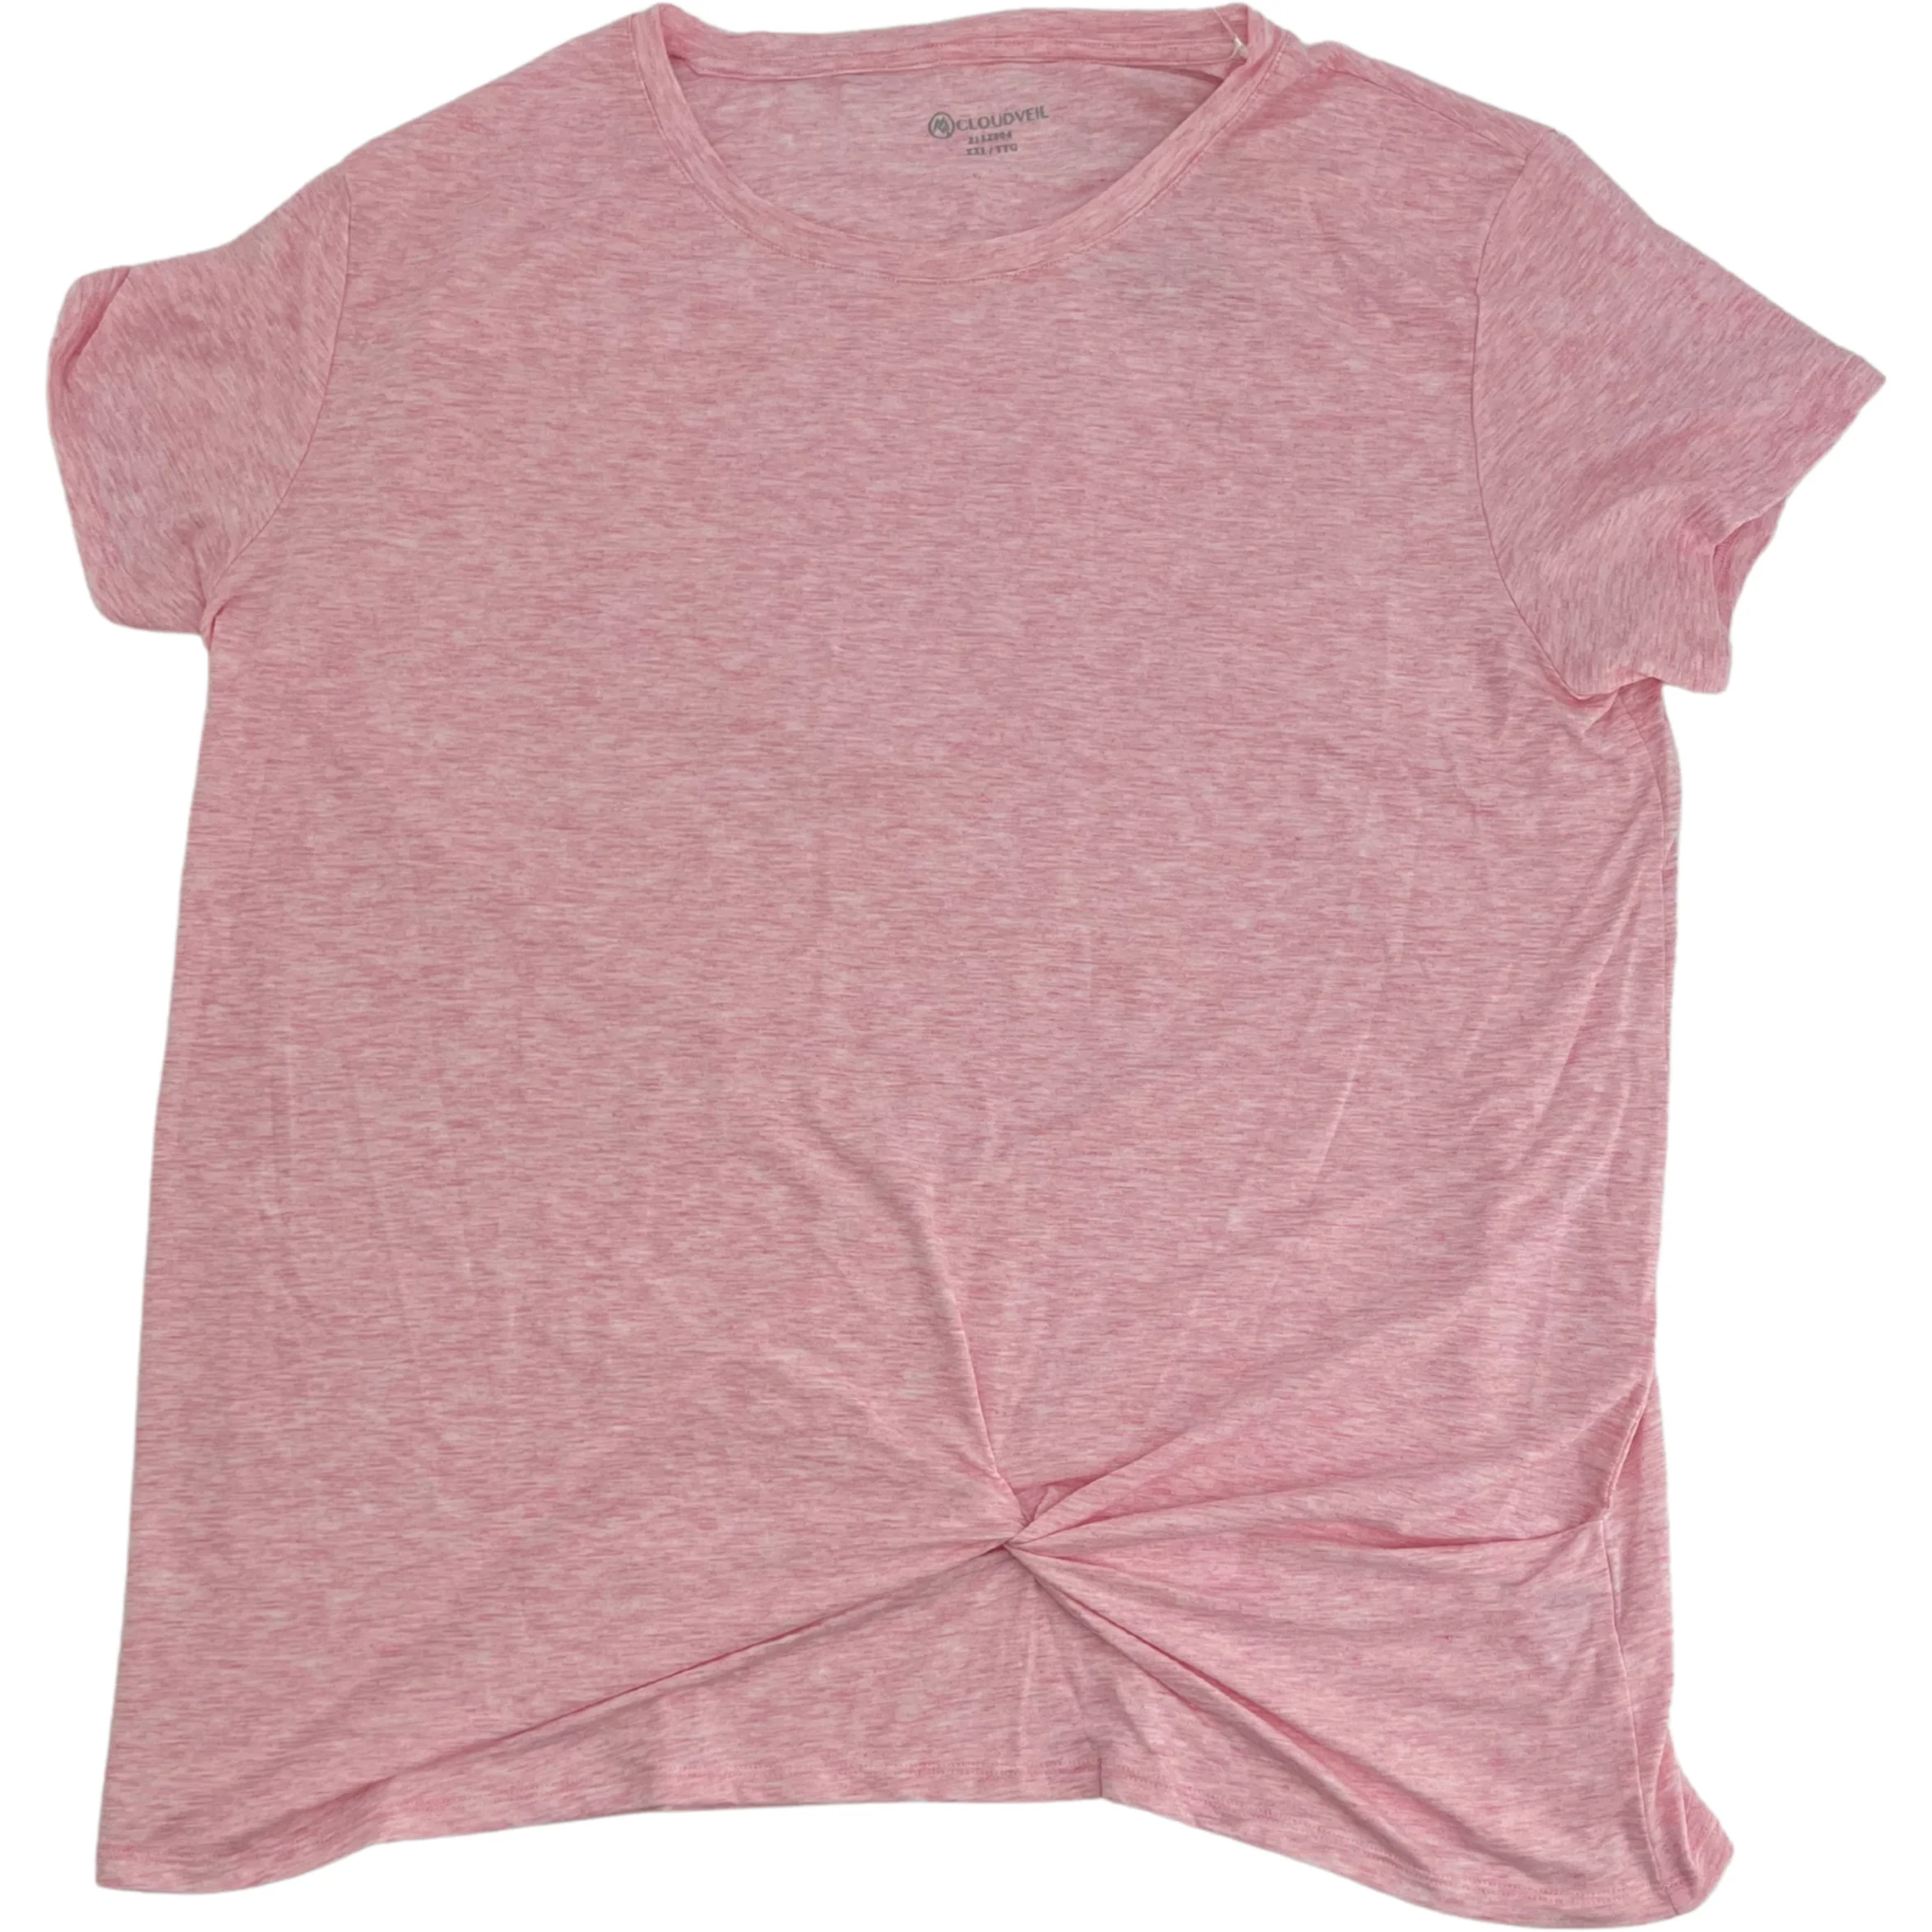 Cloudveil Women's Short Sleeve T-Shirt / Size XXL / Pink